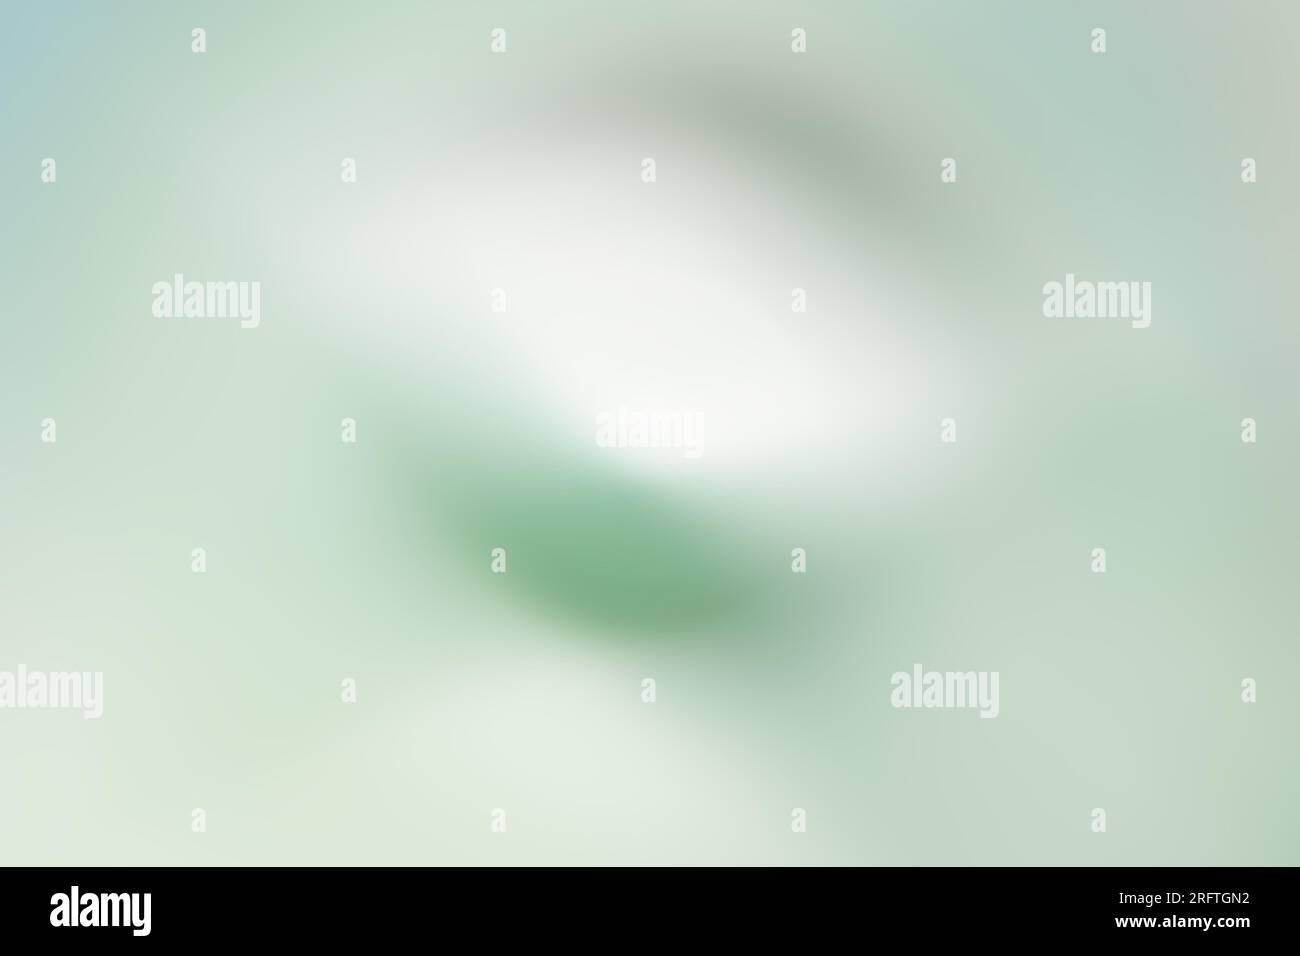 un fond numérique rêveur, tourbillon abstrait dans les tons de vert pâle Banque D'Images